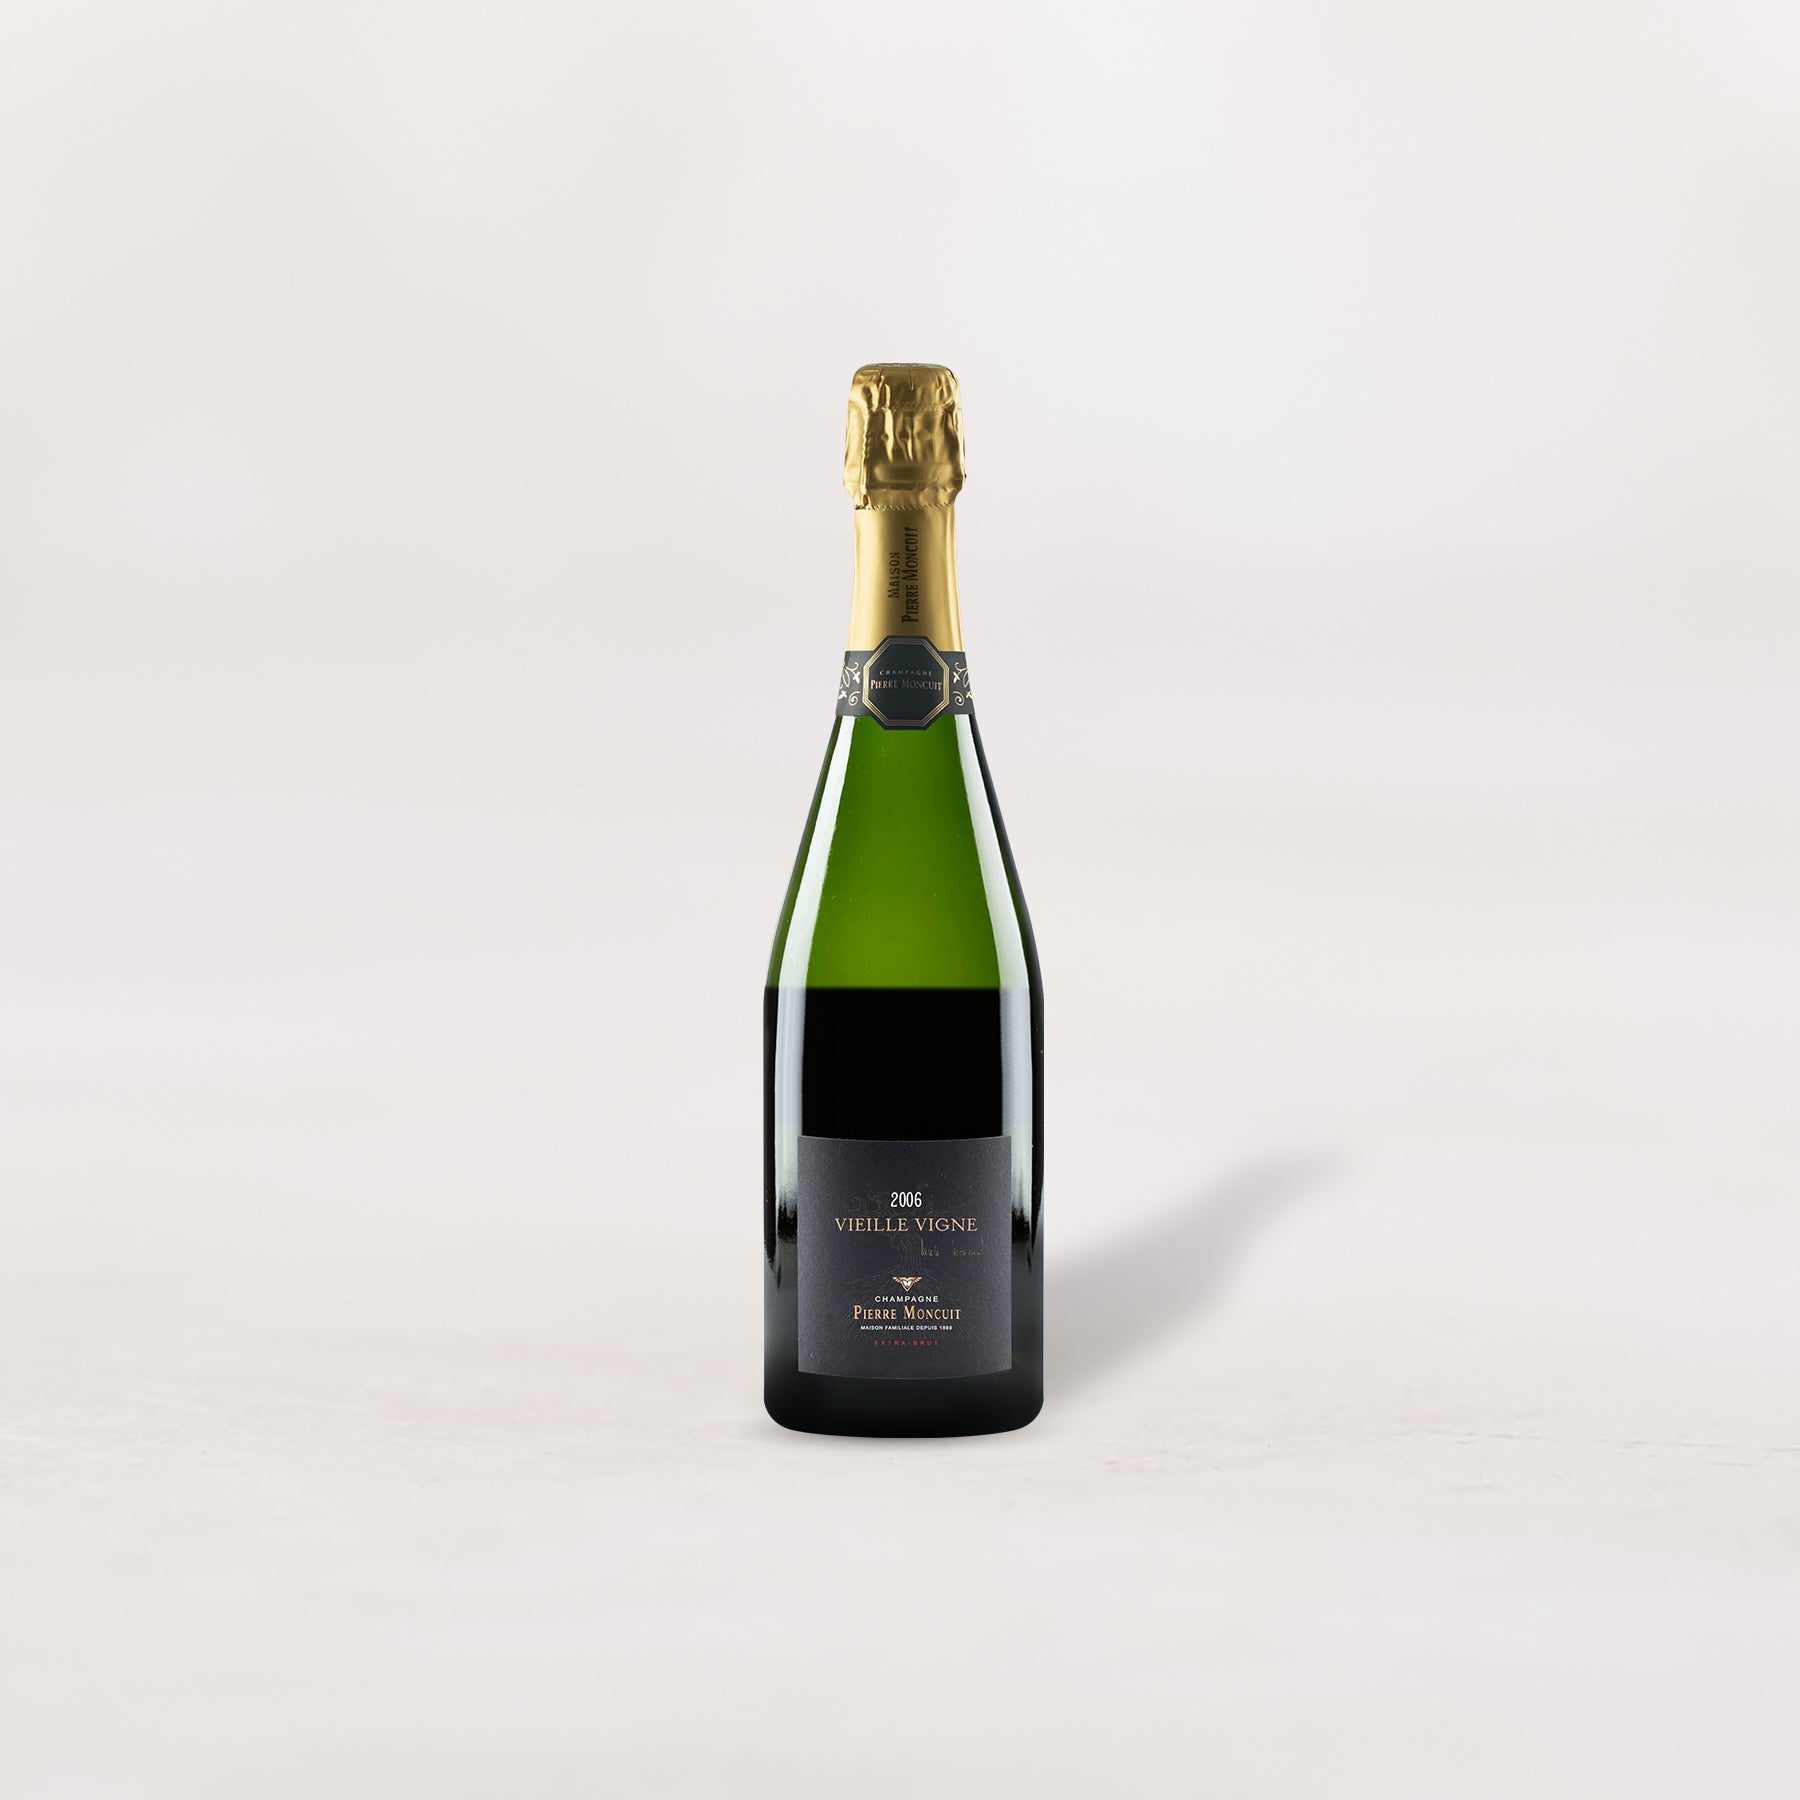 Pierre Moncuit, Champagne Extra Brut Grand Cru Blanc de Blancs VV "Cuvée Nicole Moncuit"